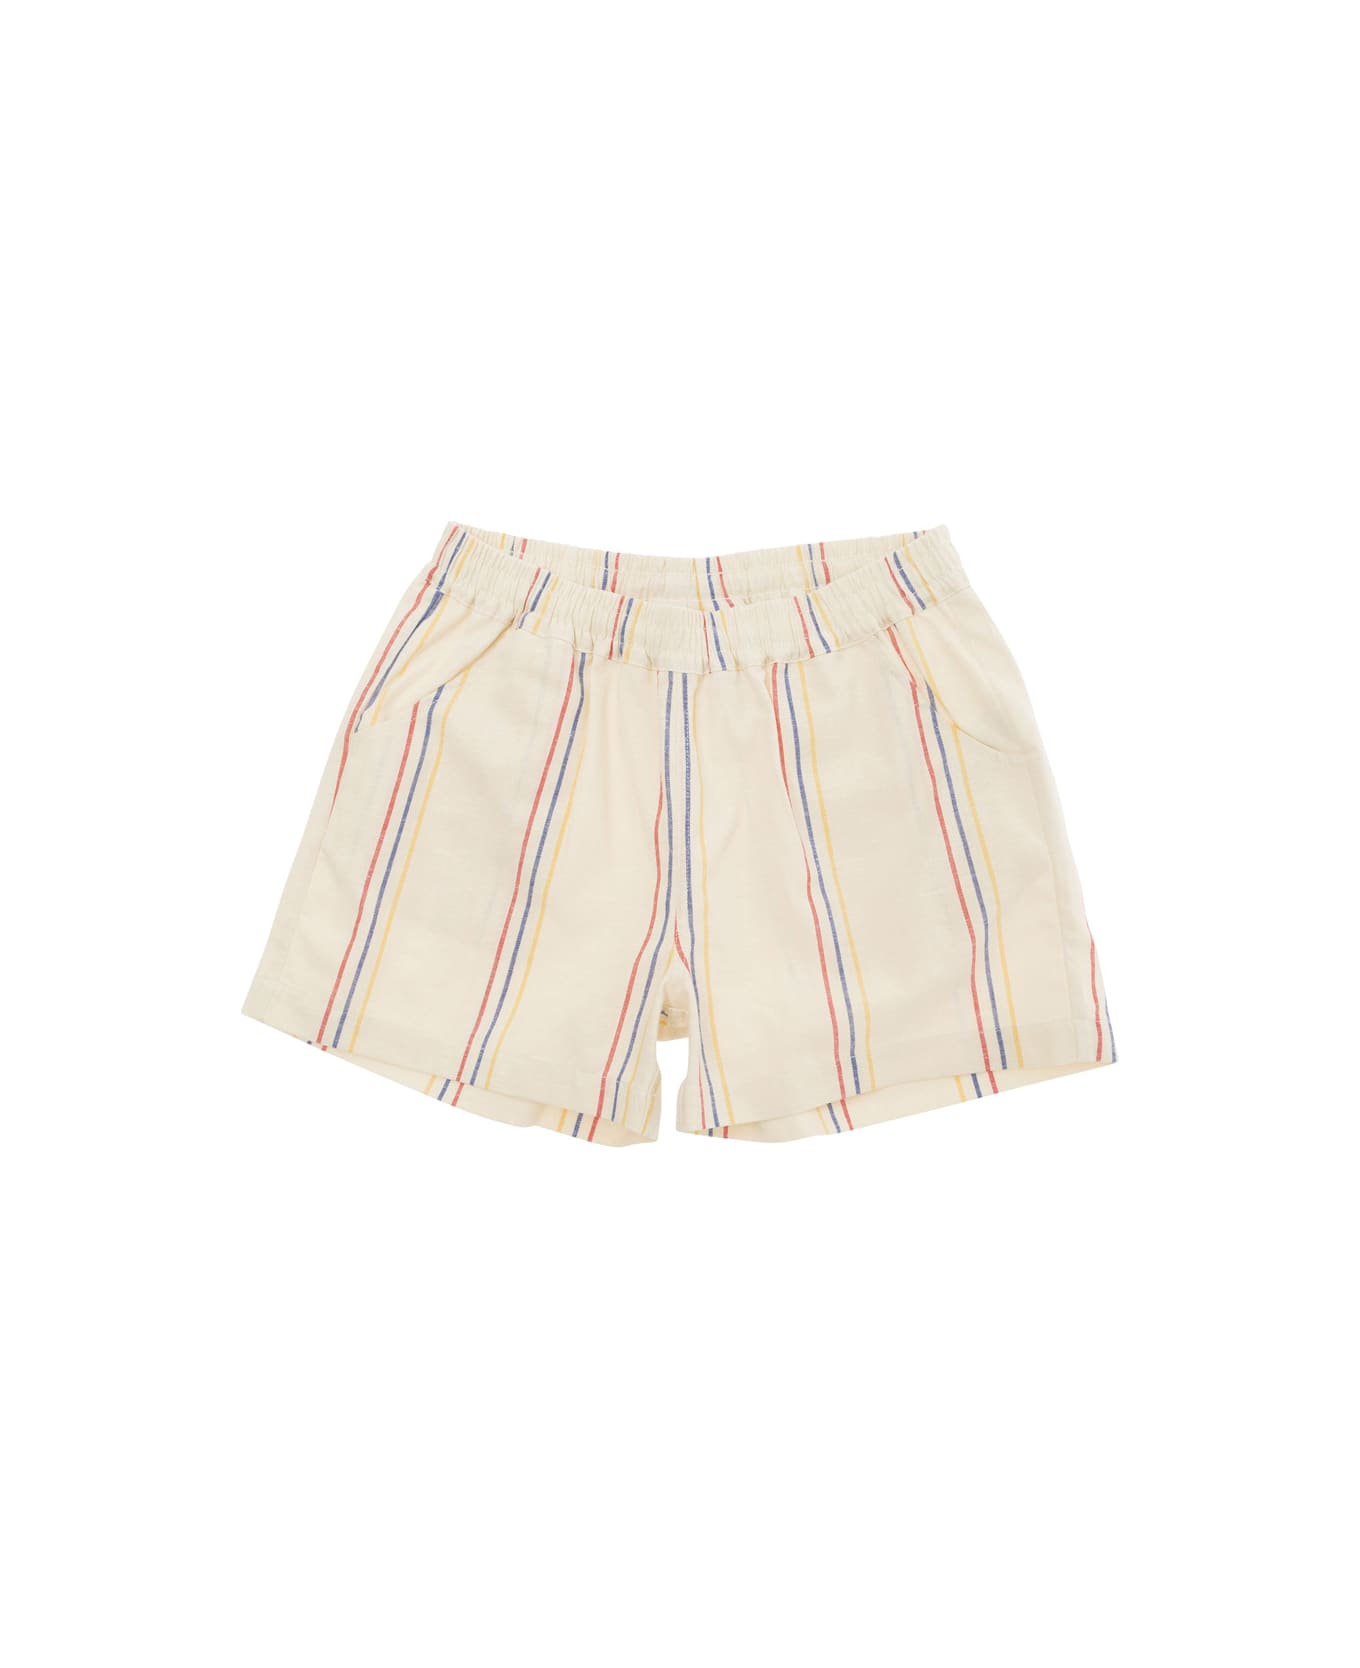 Mini Rodini Stripe Woven Shorts - White ボトムス